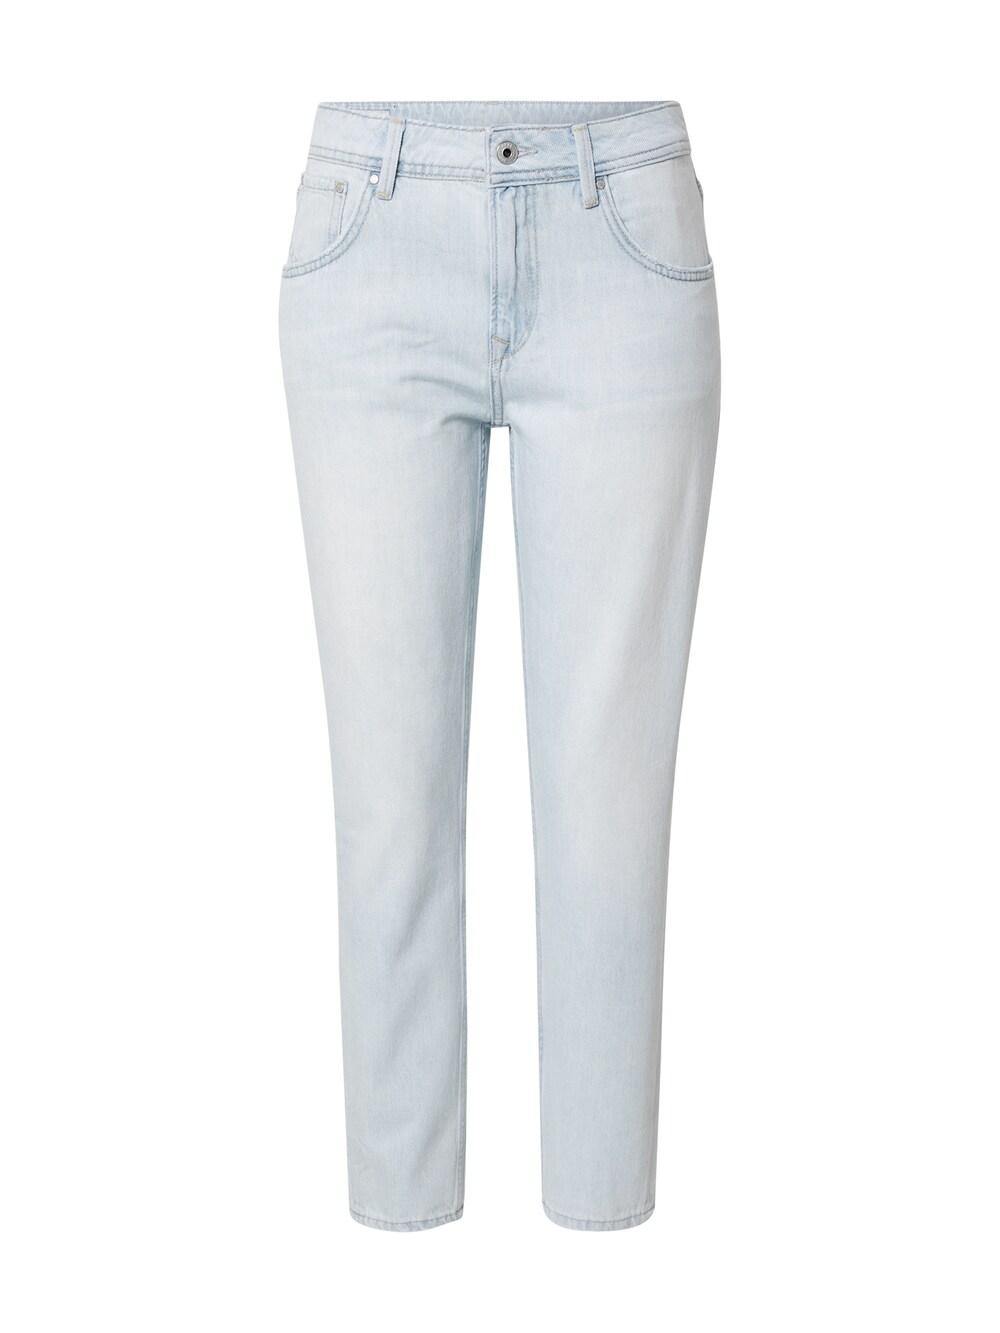 Обычные джинсы Pepe Jeans VIOLET, светло-синий